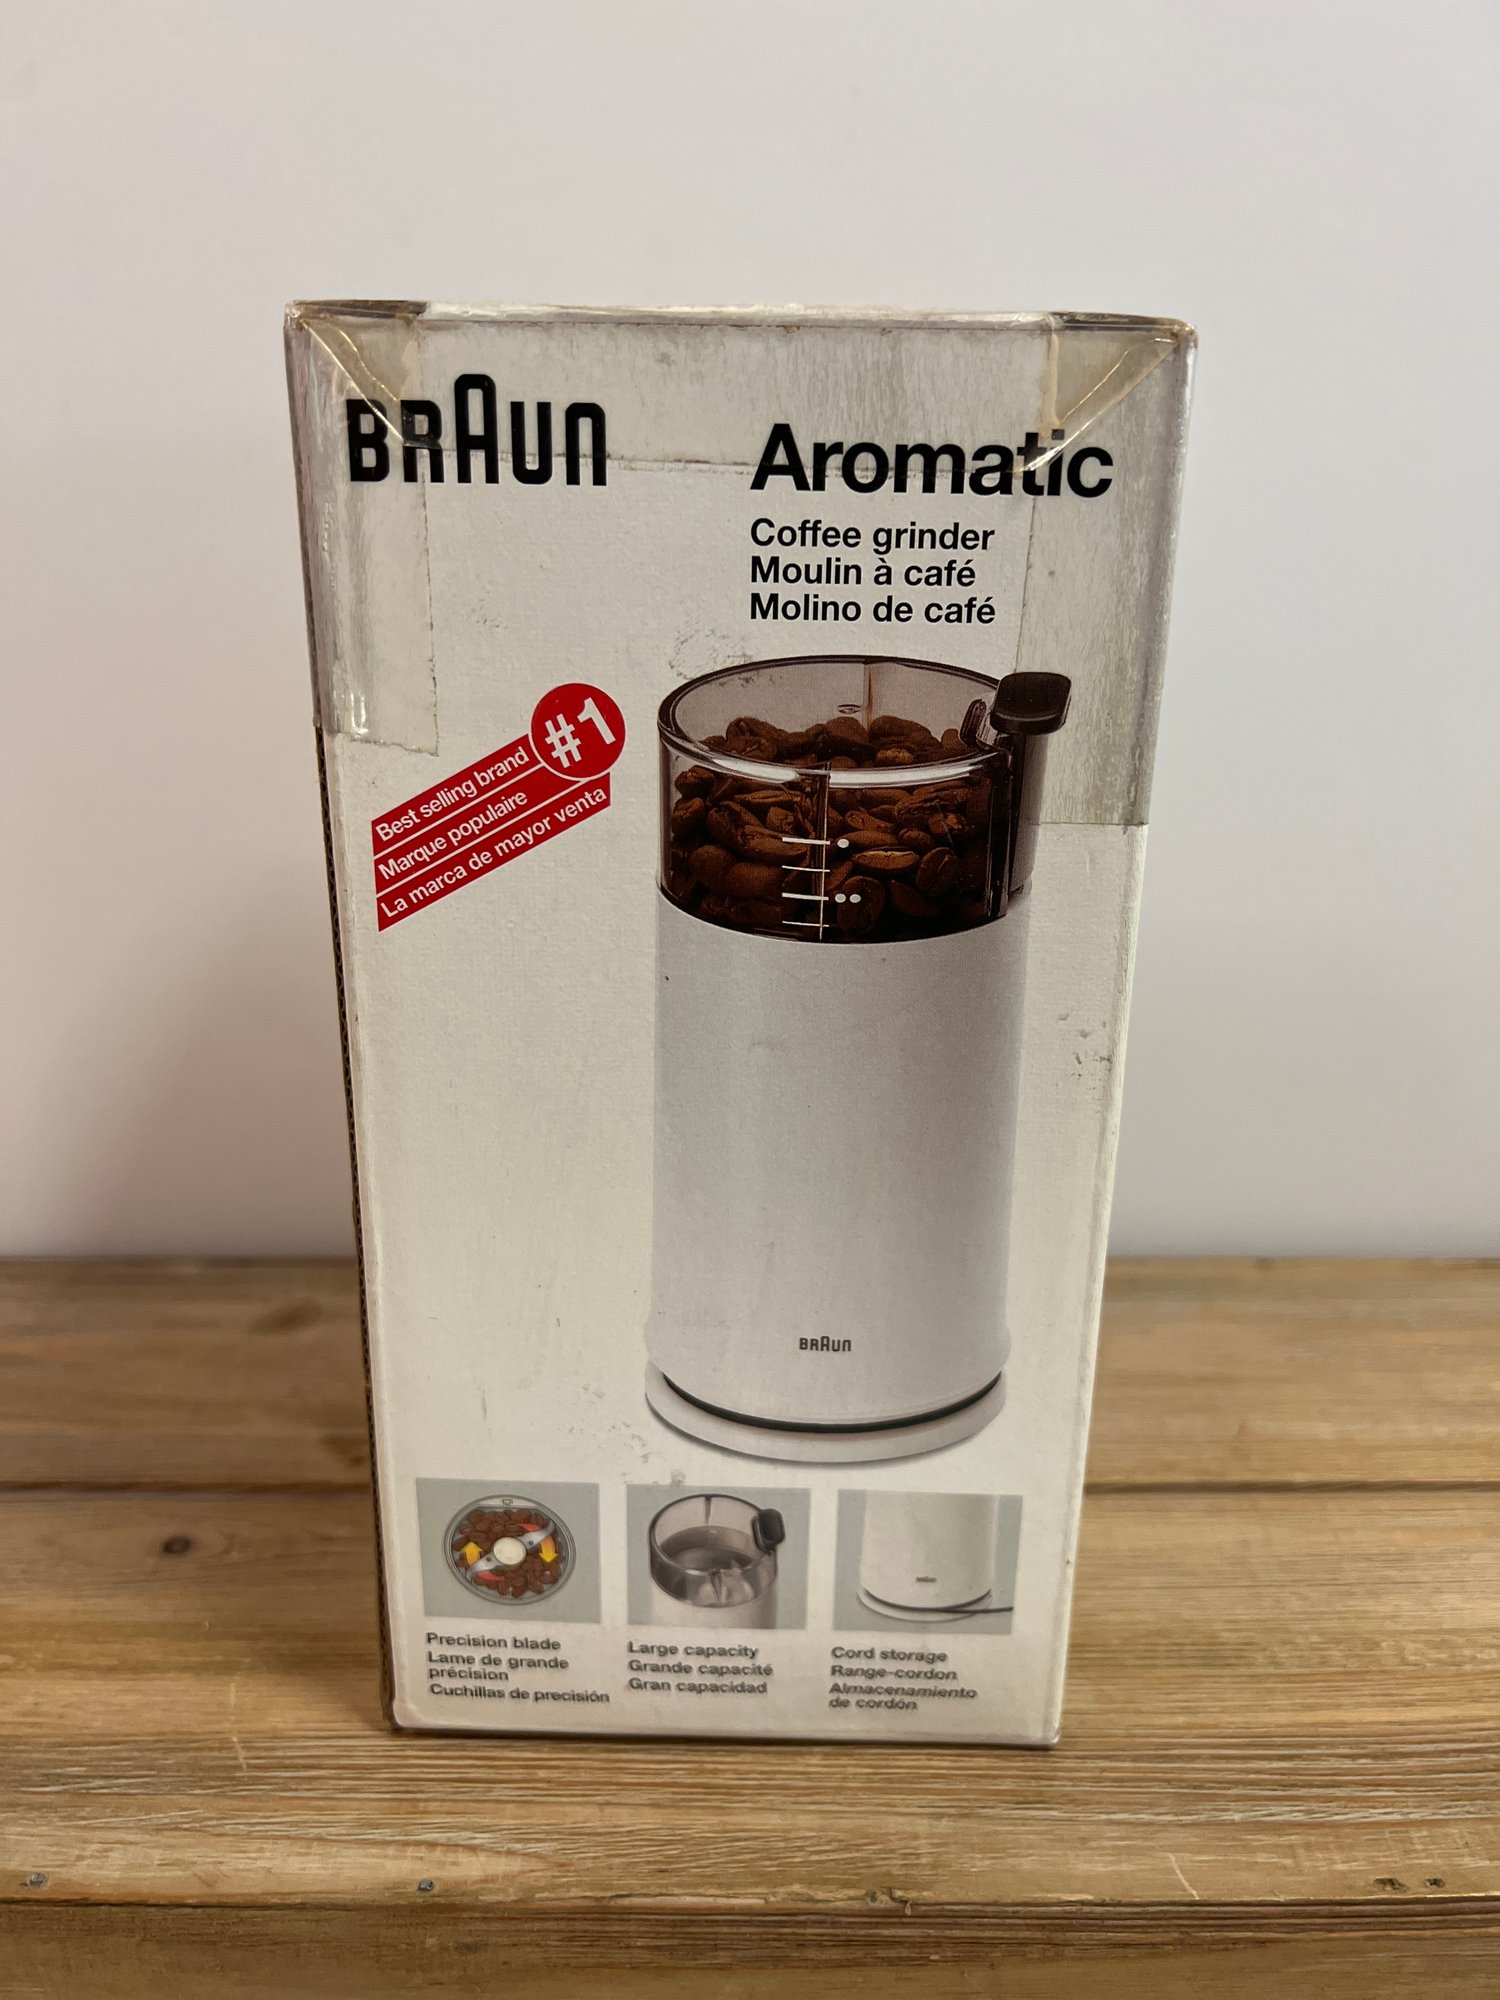  Braun Aromatic Coffee Grinder, Black : Home & Kitchen